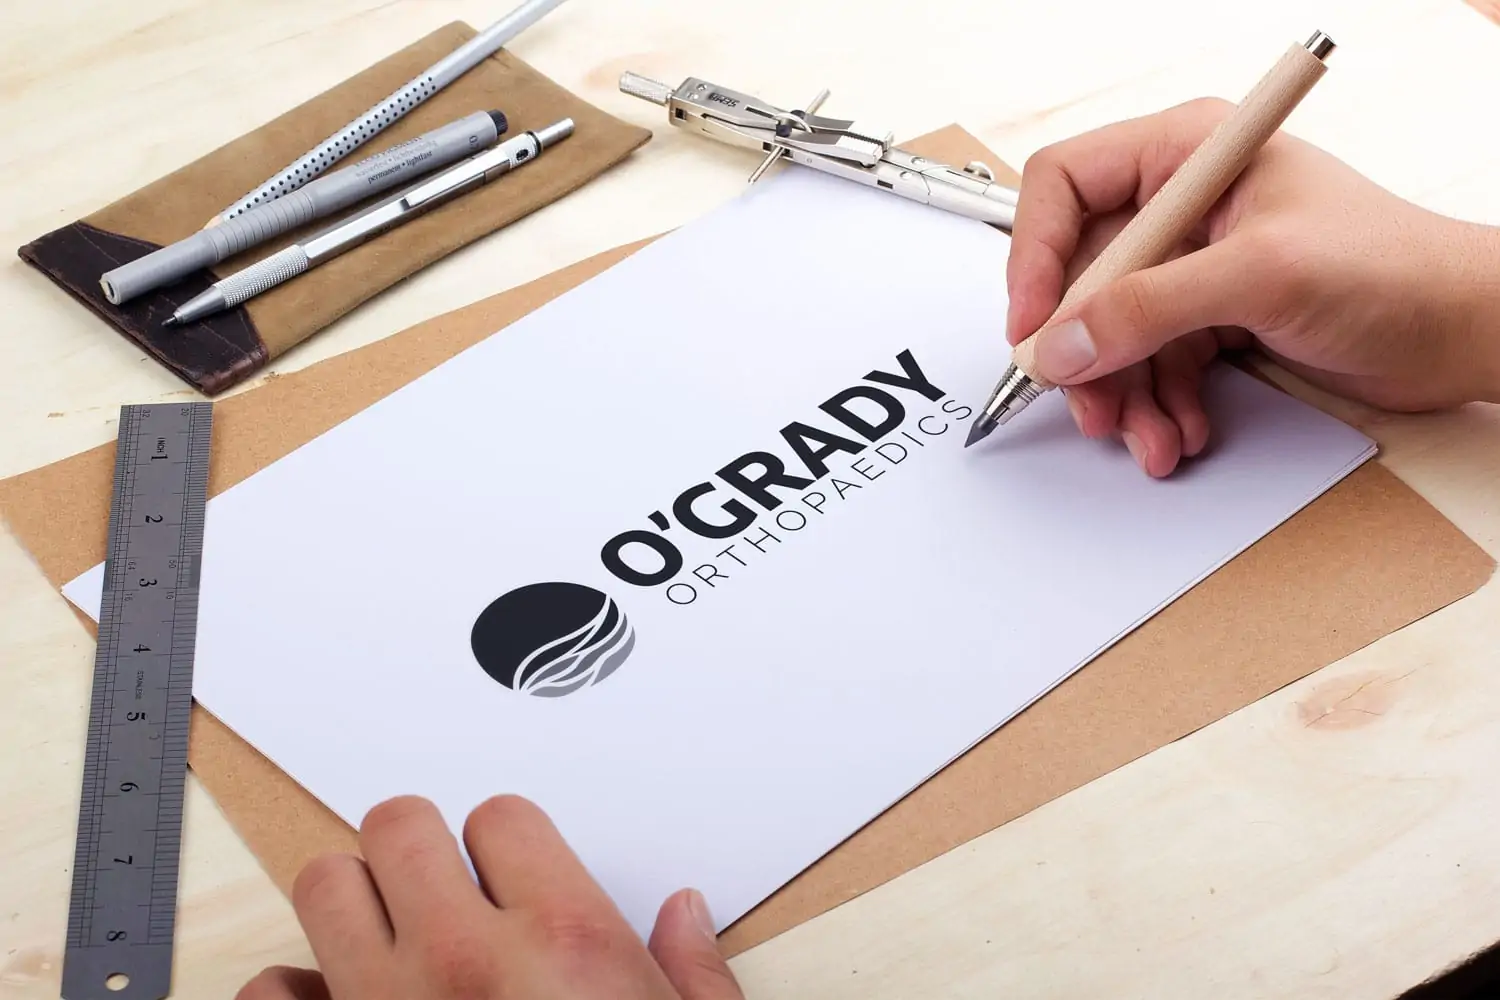 OGrady-Press-Release-logo.jpg